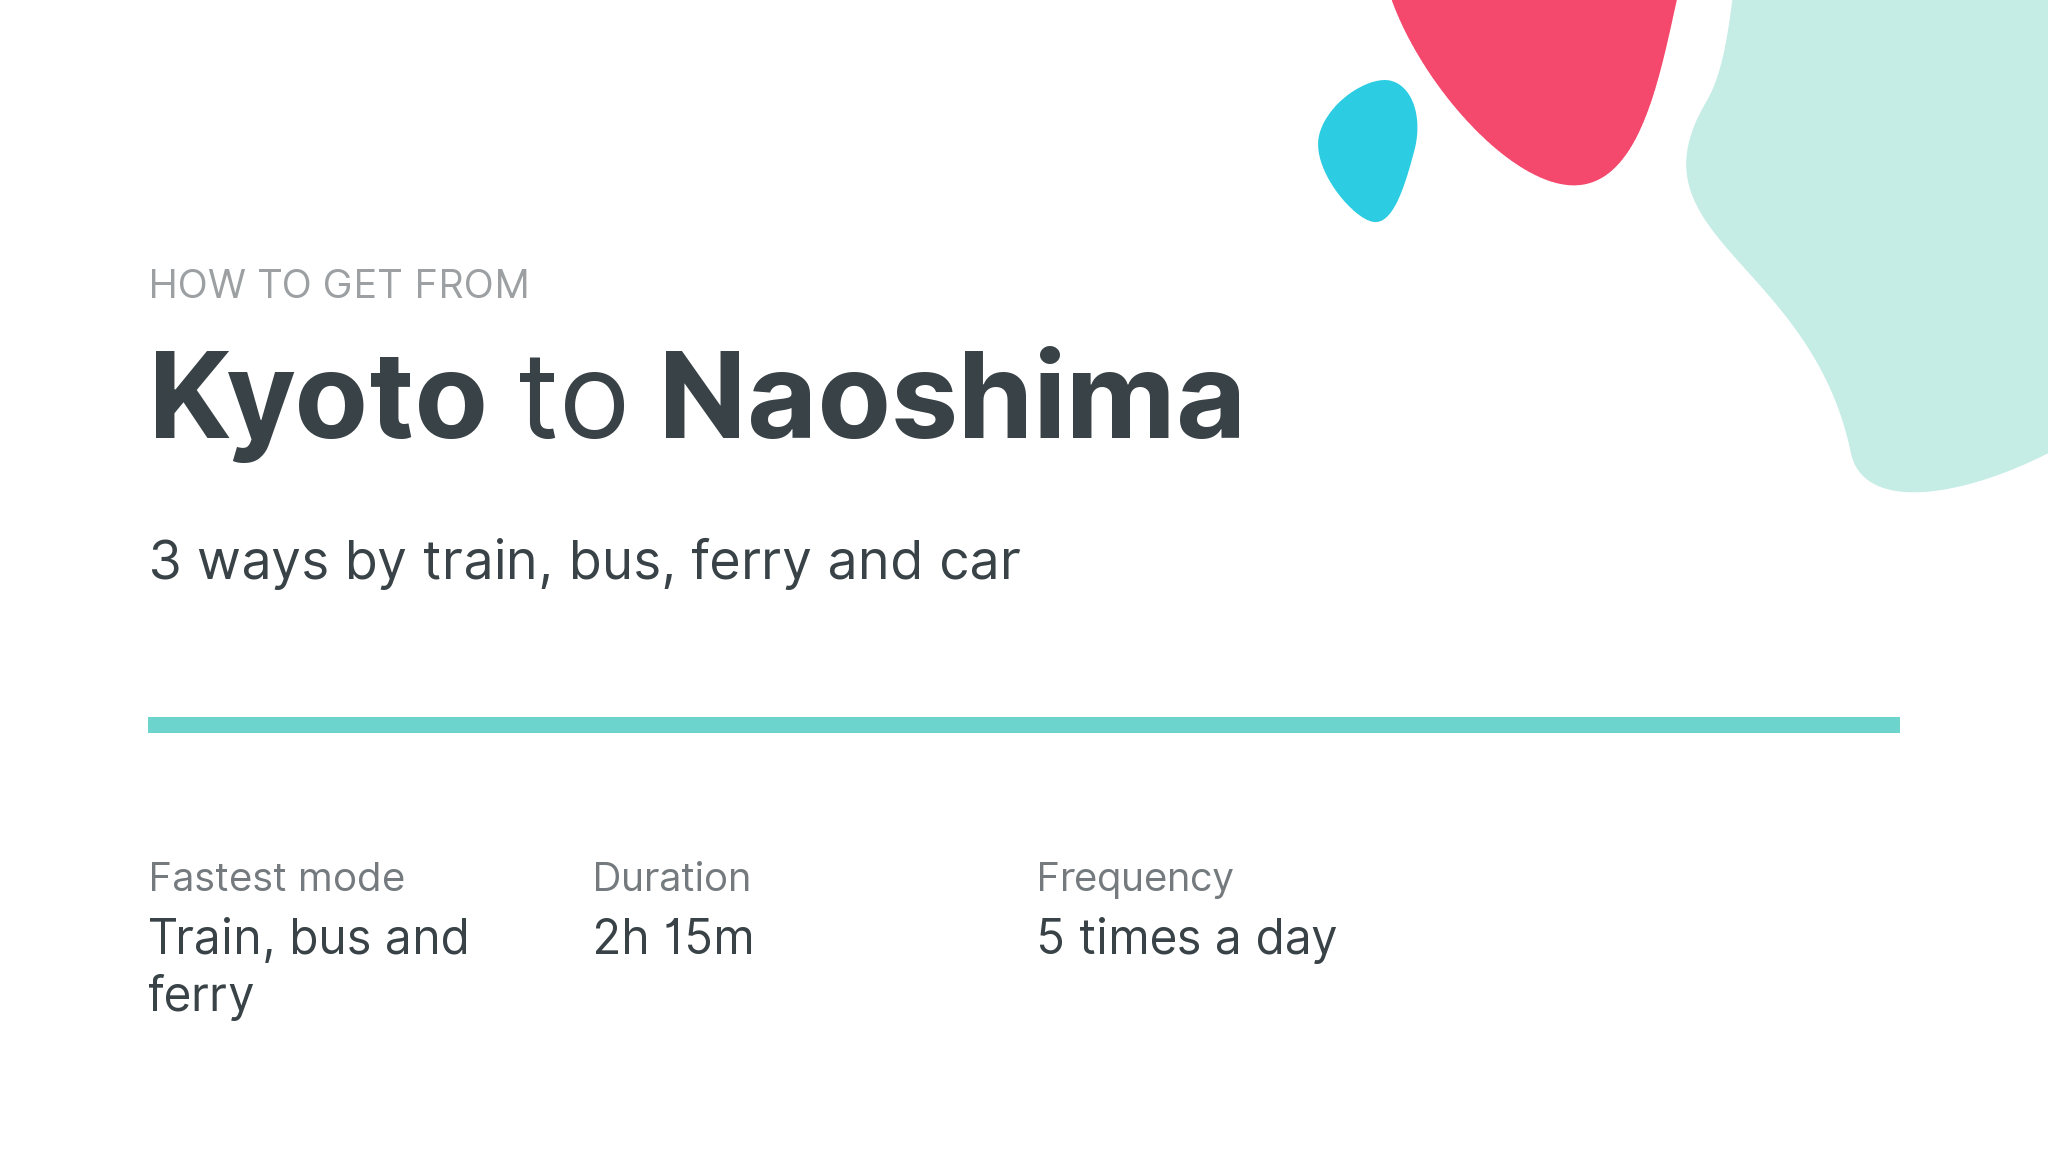 How do I get from Kyoto to Naoshima